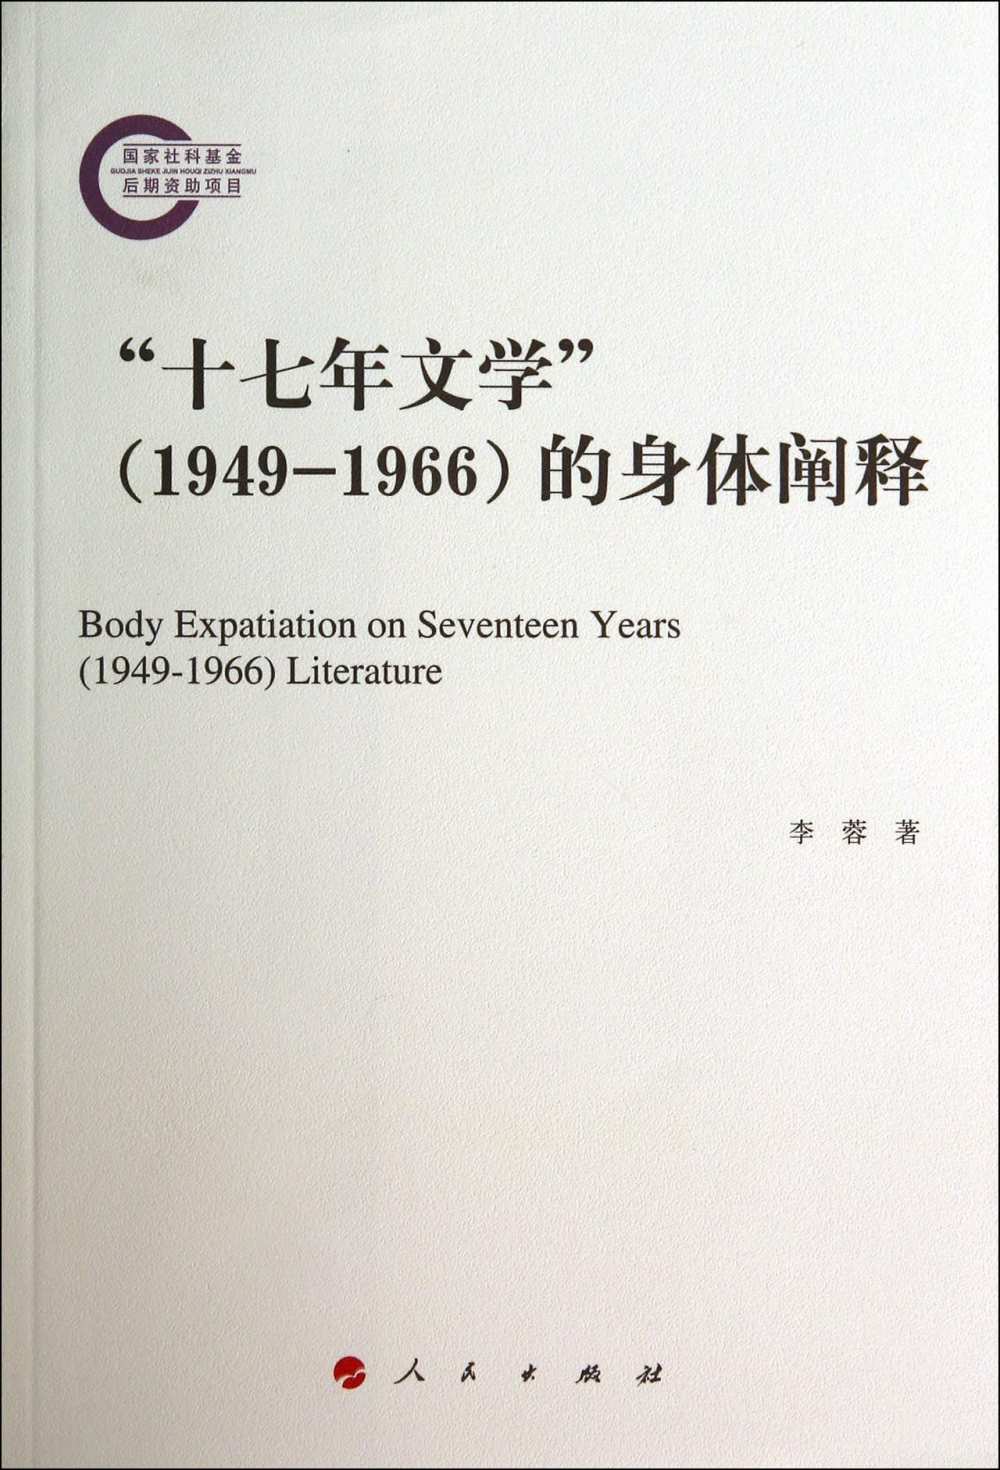 「十七年文學」(1949-1966)的身體闡釋